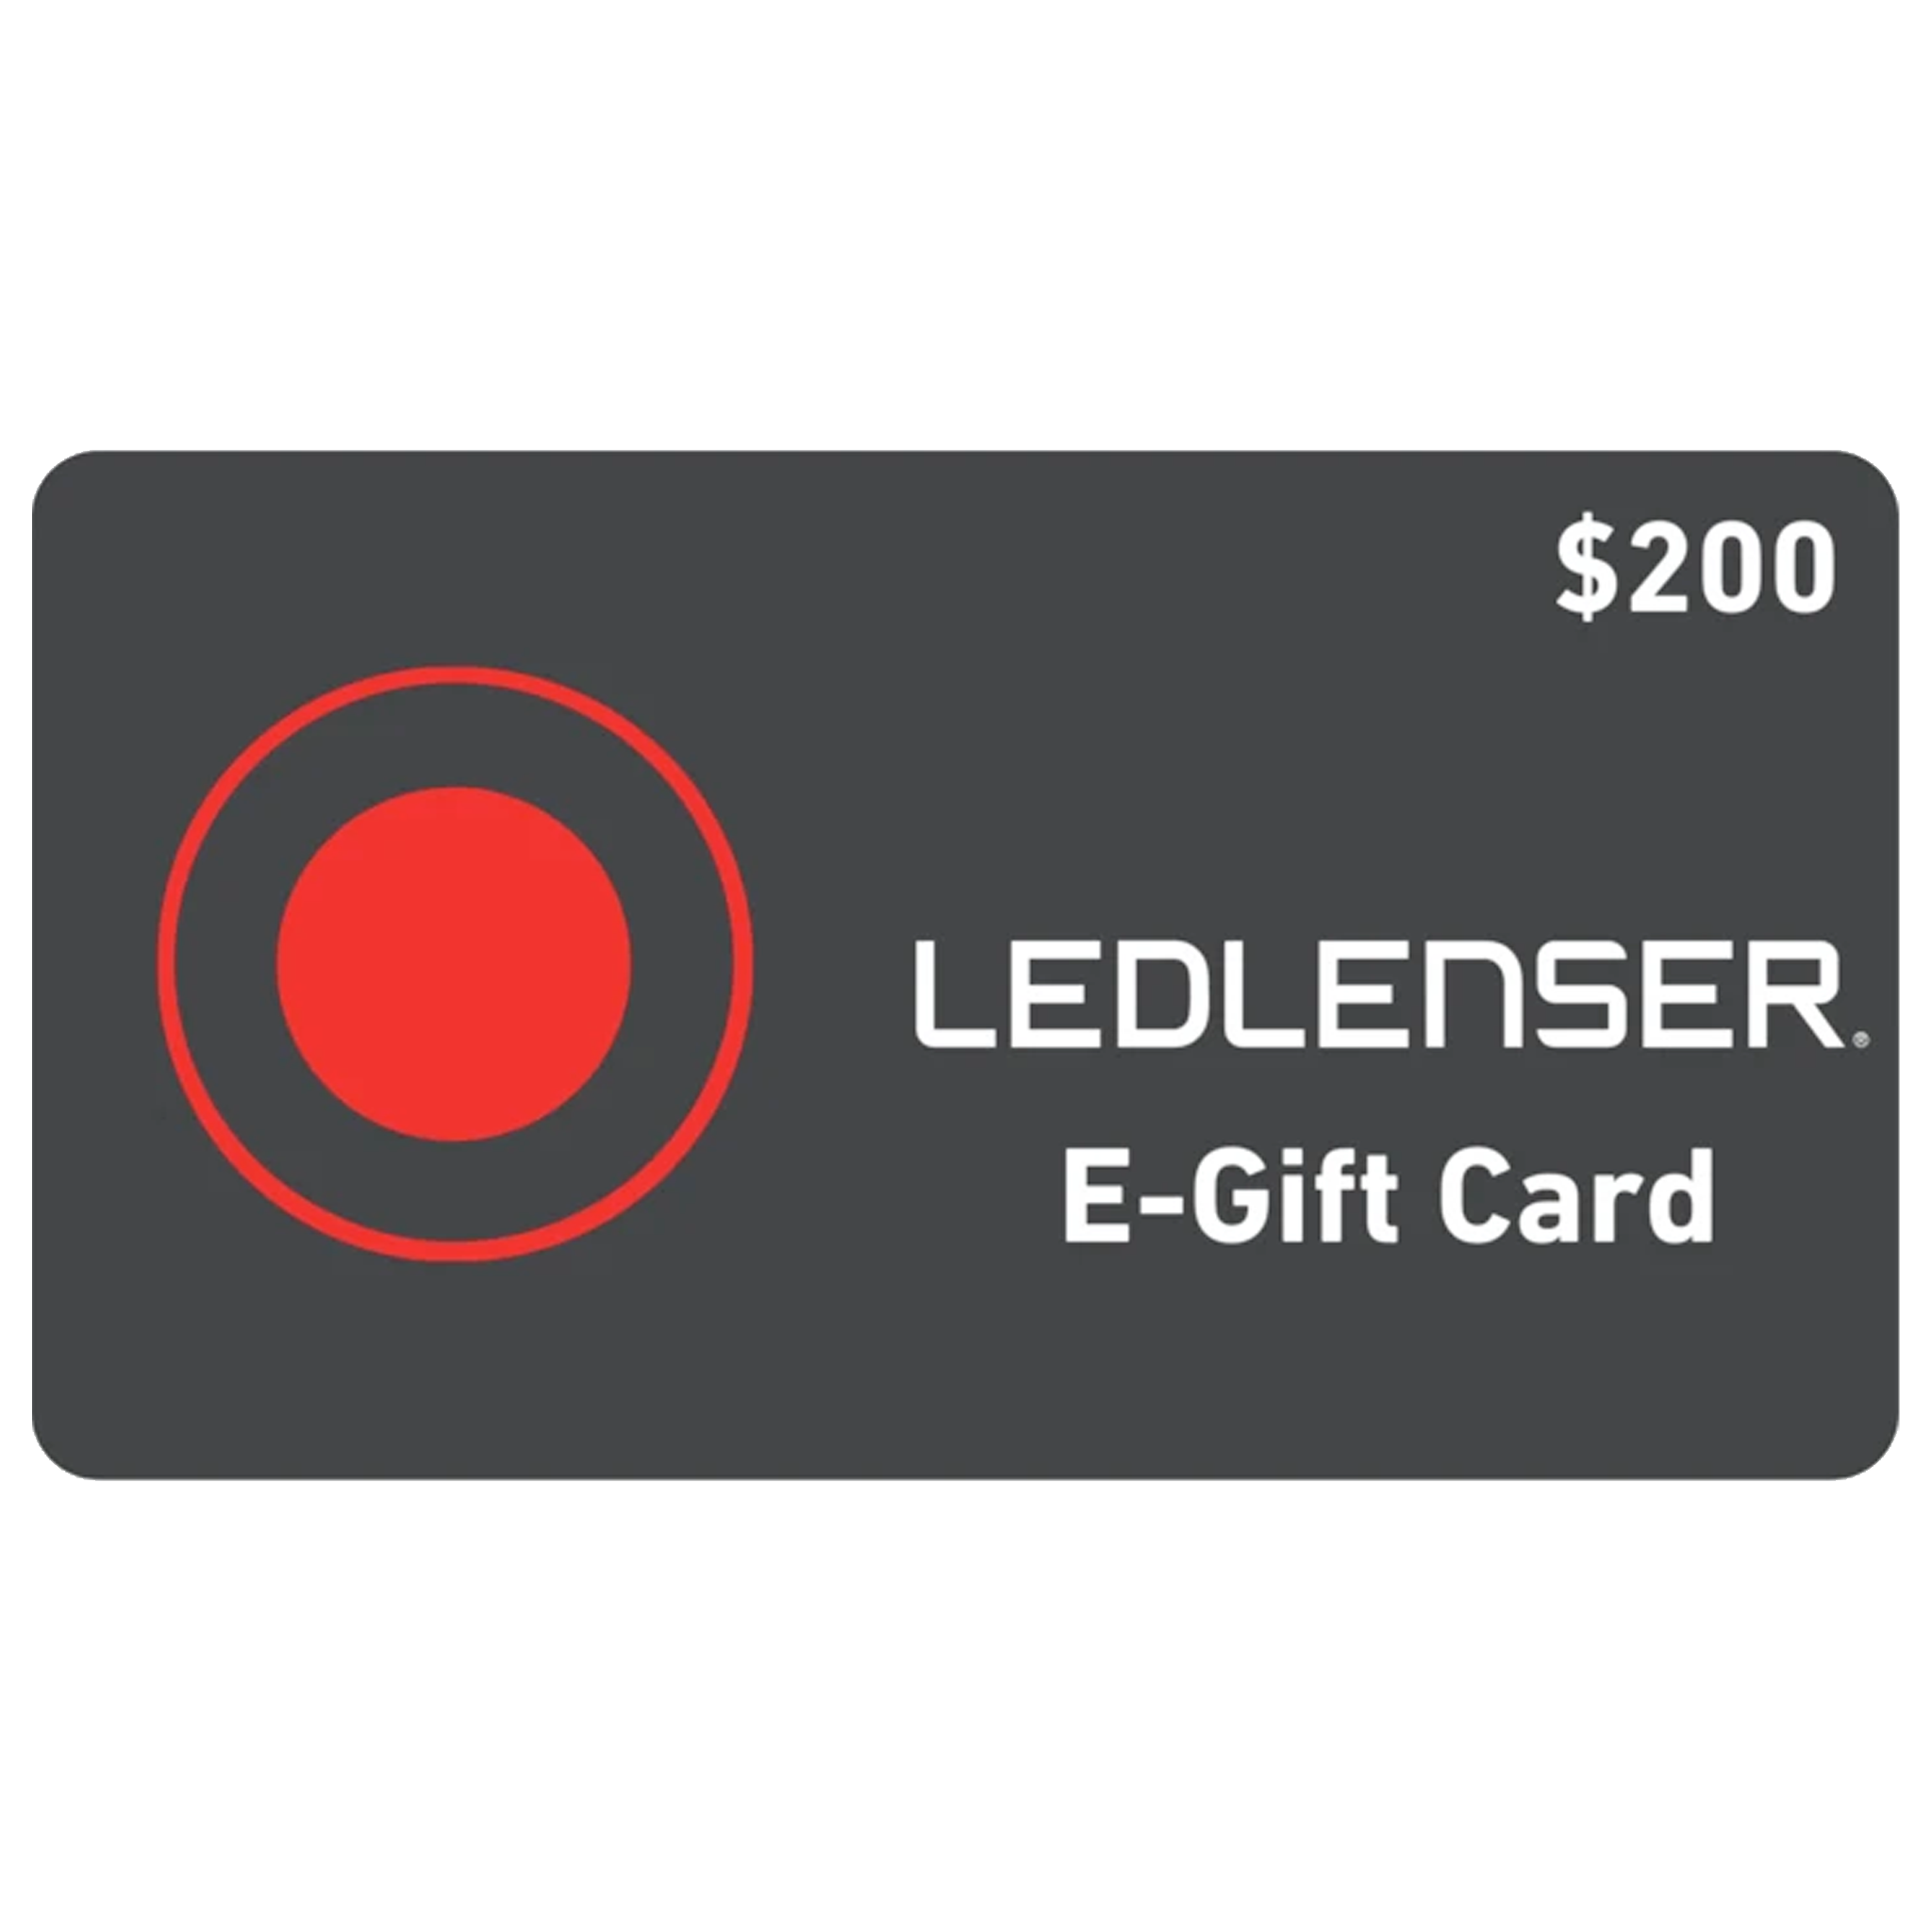 Ledlenser Gift Card - $200